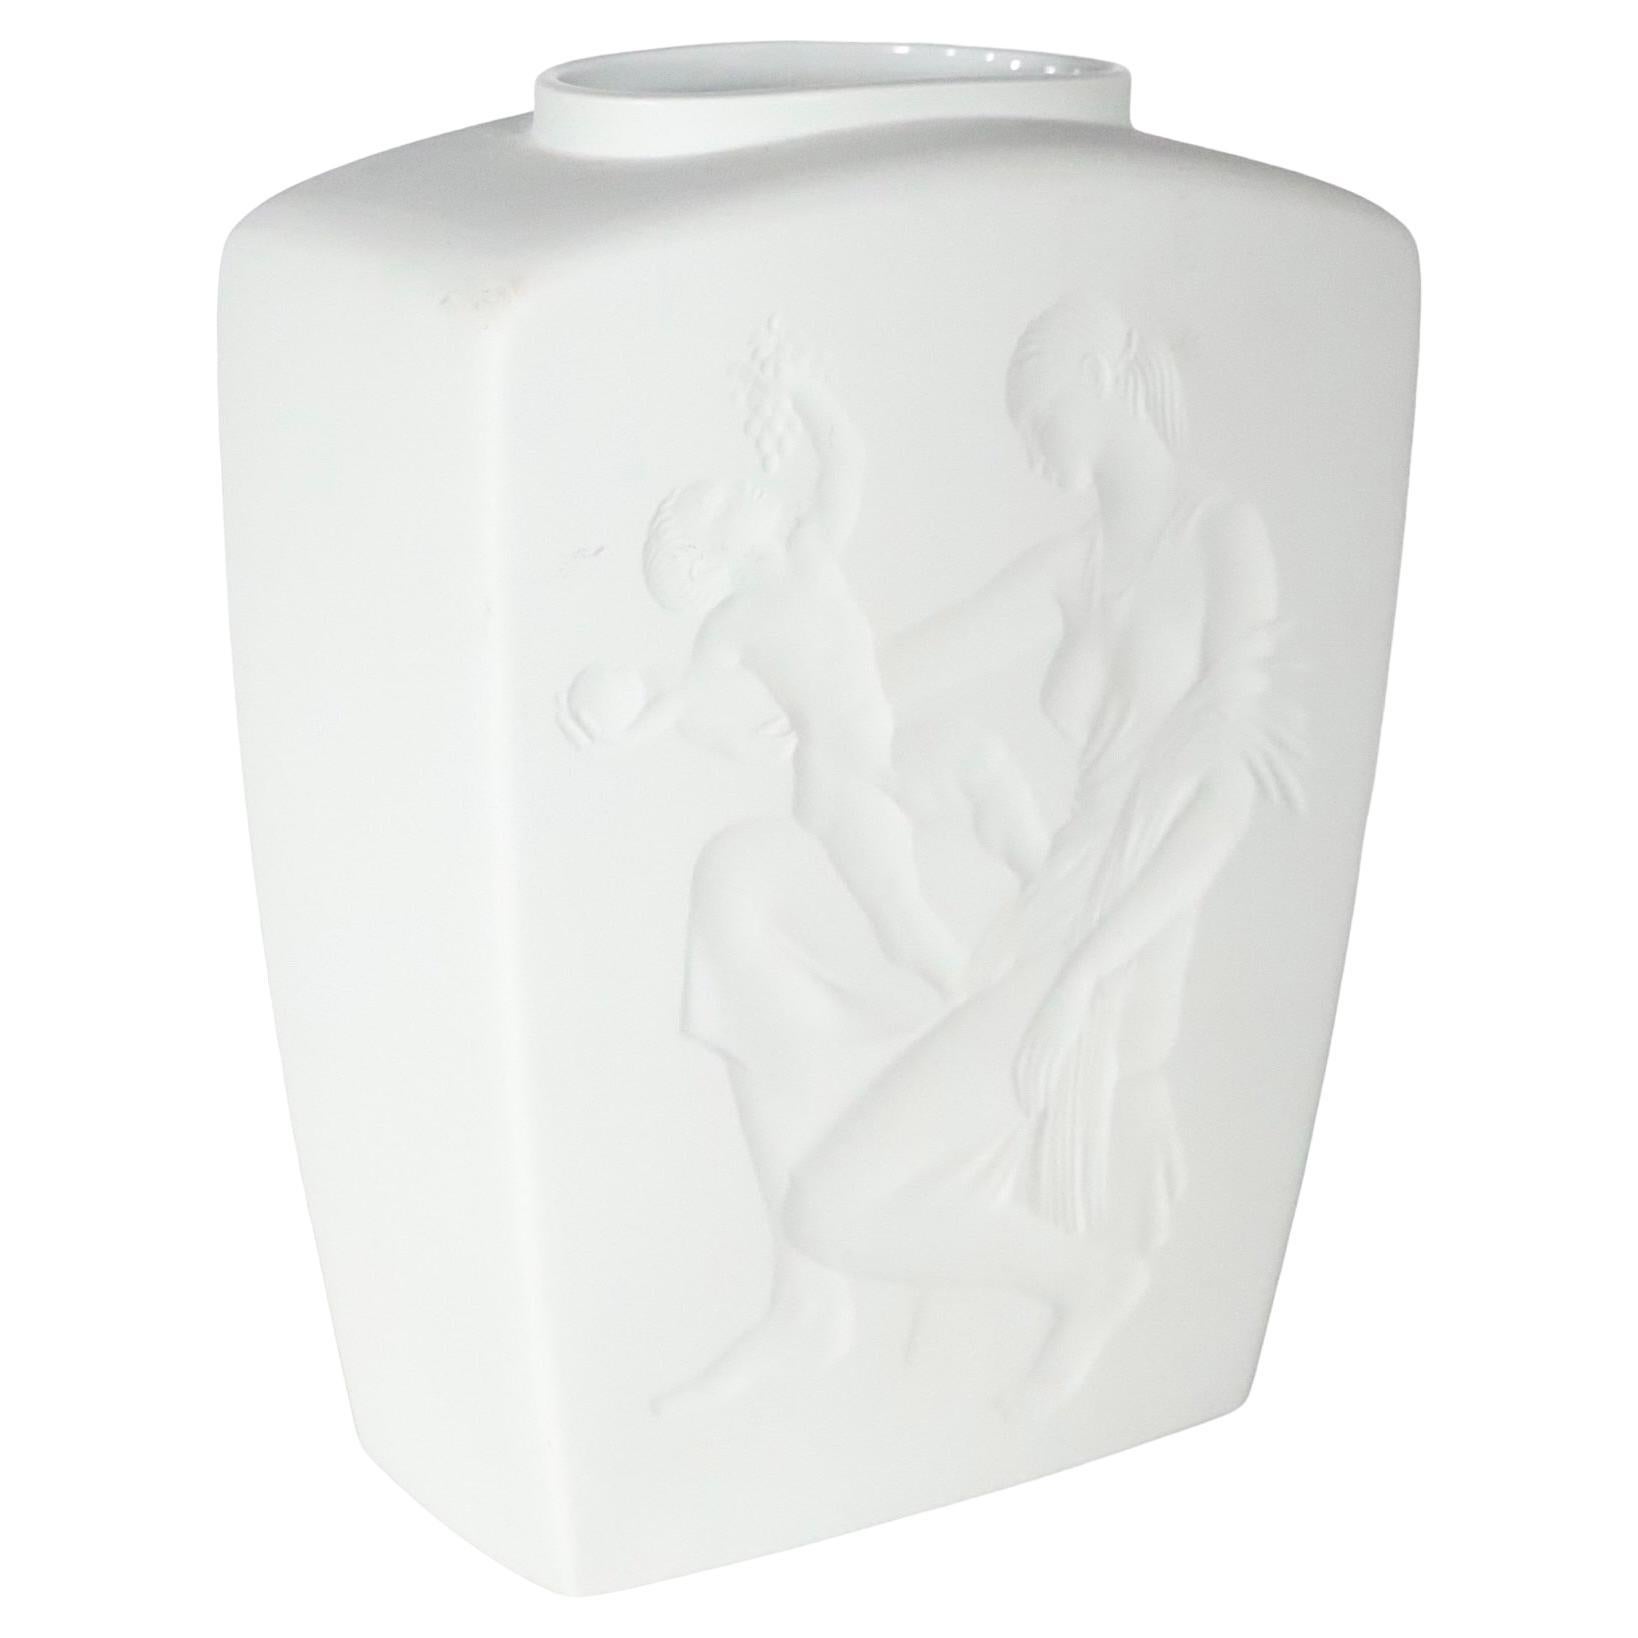 Exquisite Art-Déco-Vase aus Biskuit in einem  raffinierte Weiß-auf-Weiß-Farbgebung. Die Vase zeigt eine klassische Mutter-Kind-Szene, die in einem plastischen Relief ausgeführt ist.
 Das Stück ist in einem ausgezeichneten, originalen, sauberen und